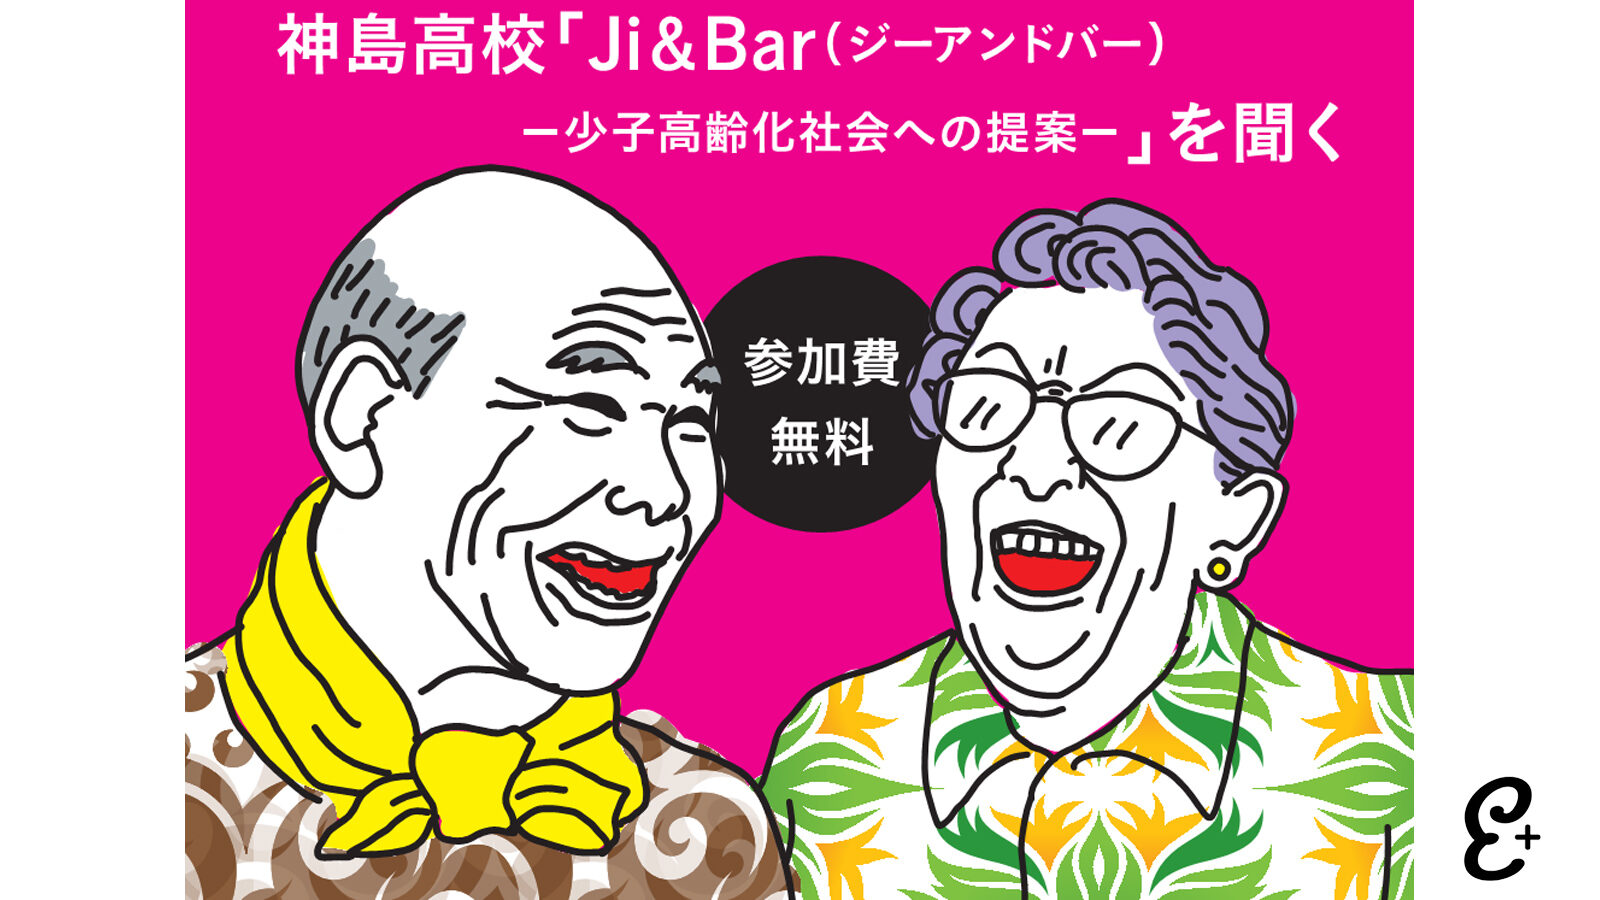 シオゴリバ（vol.4）神島高校「Ji＆Bar（ジーアンドバー）－少子高齢化社会への提案－」を聞く